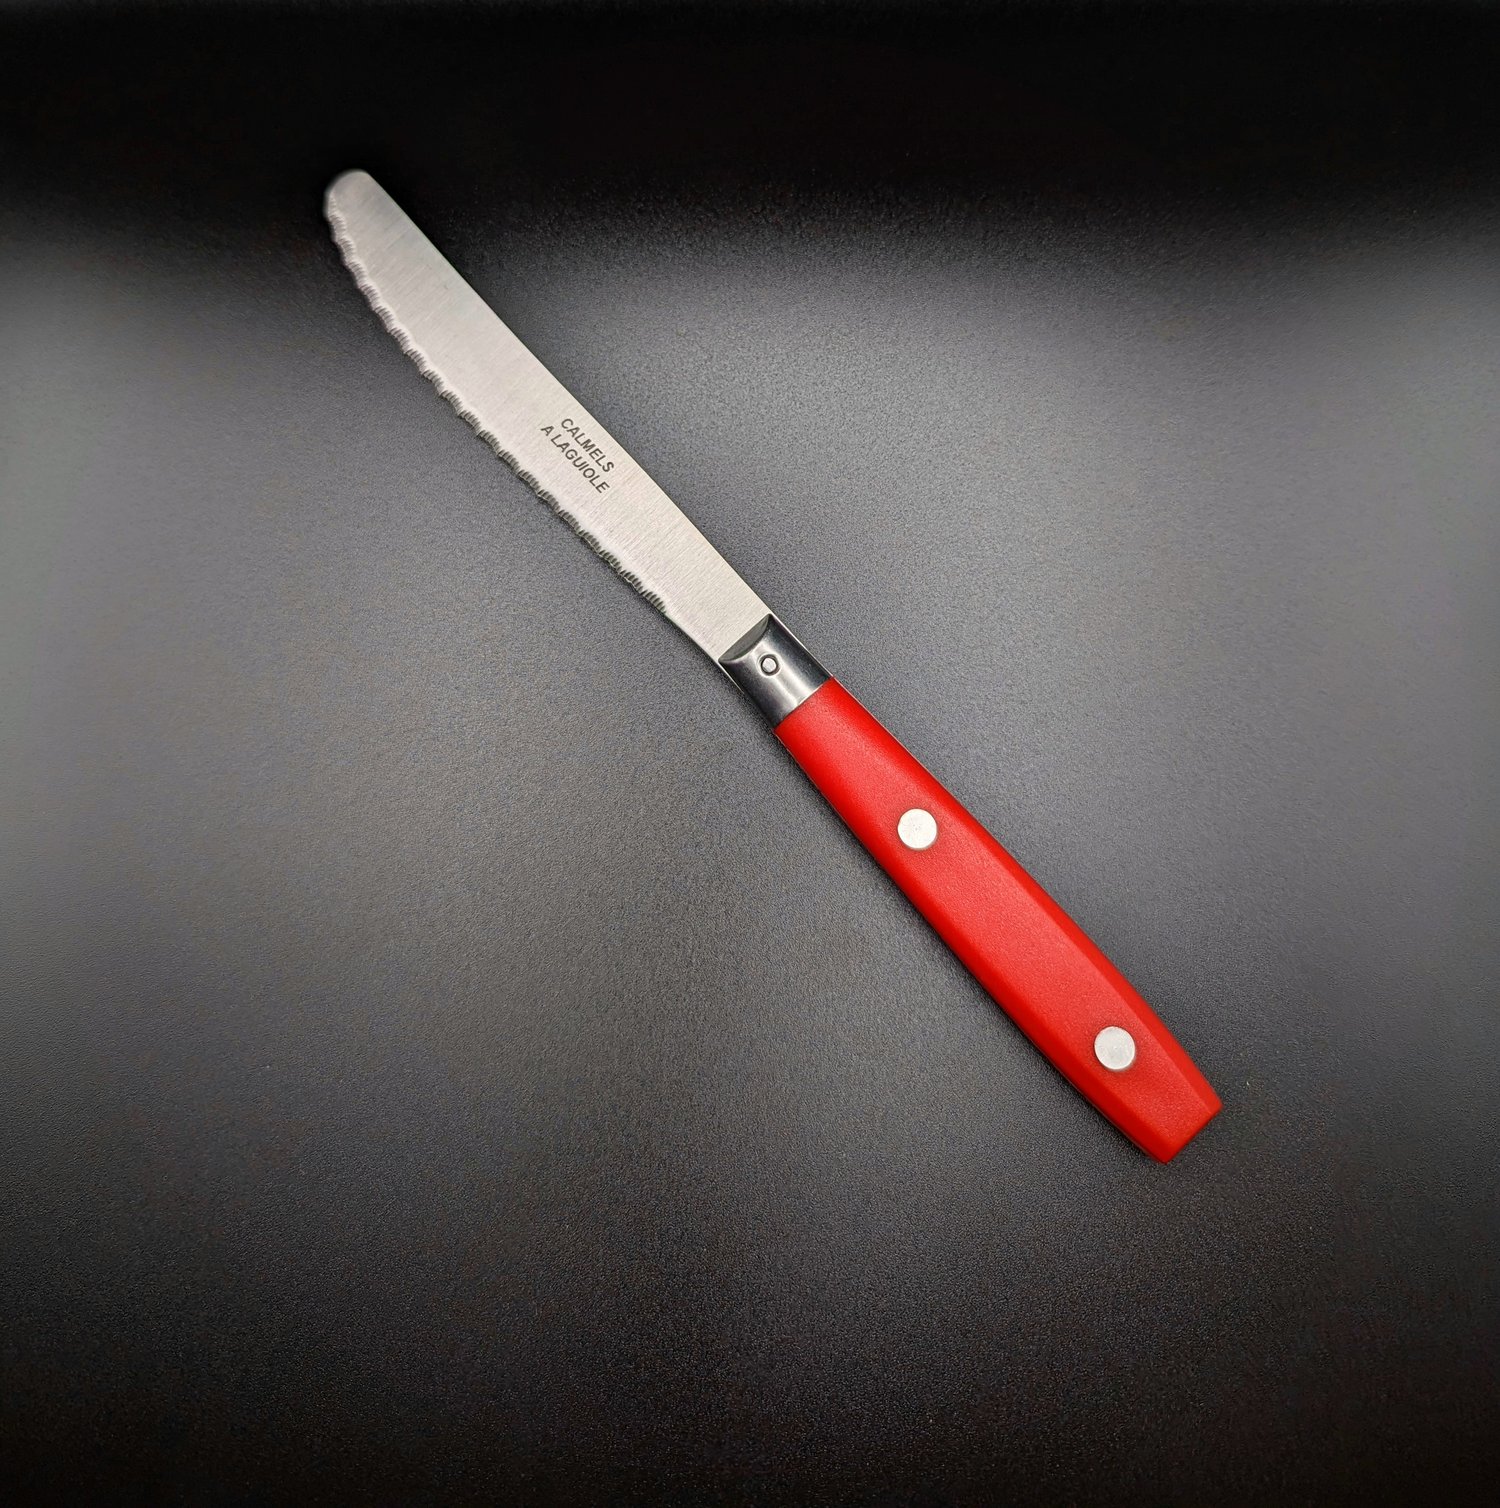 Ensemble de couteaux de table, manche plastique — Coutellerie J